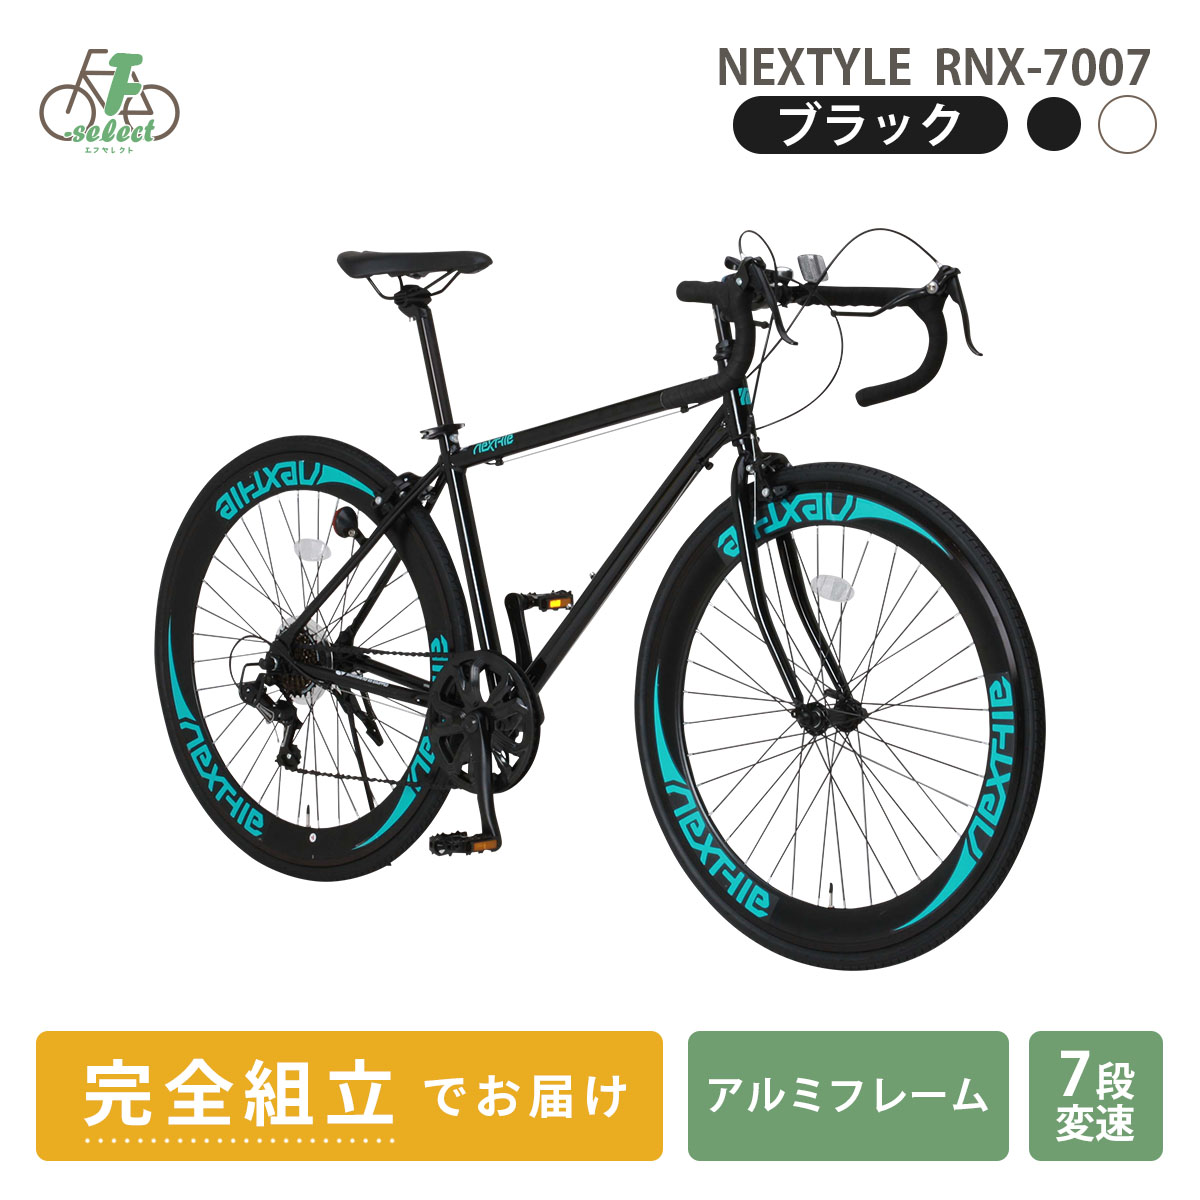 ロードバイク 自転車 完成品出荷 / 置き配可能 700×28C 軽量 アルミフレーム シマノ7段変速 ネクスタイル NEXTYLE RNX-7007